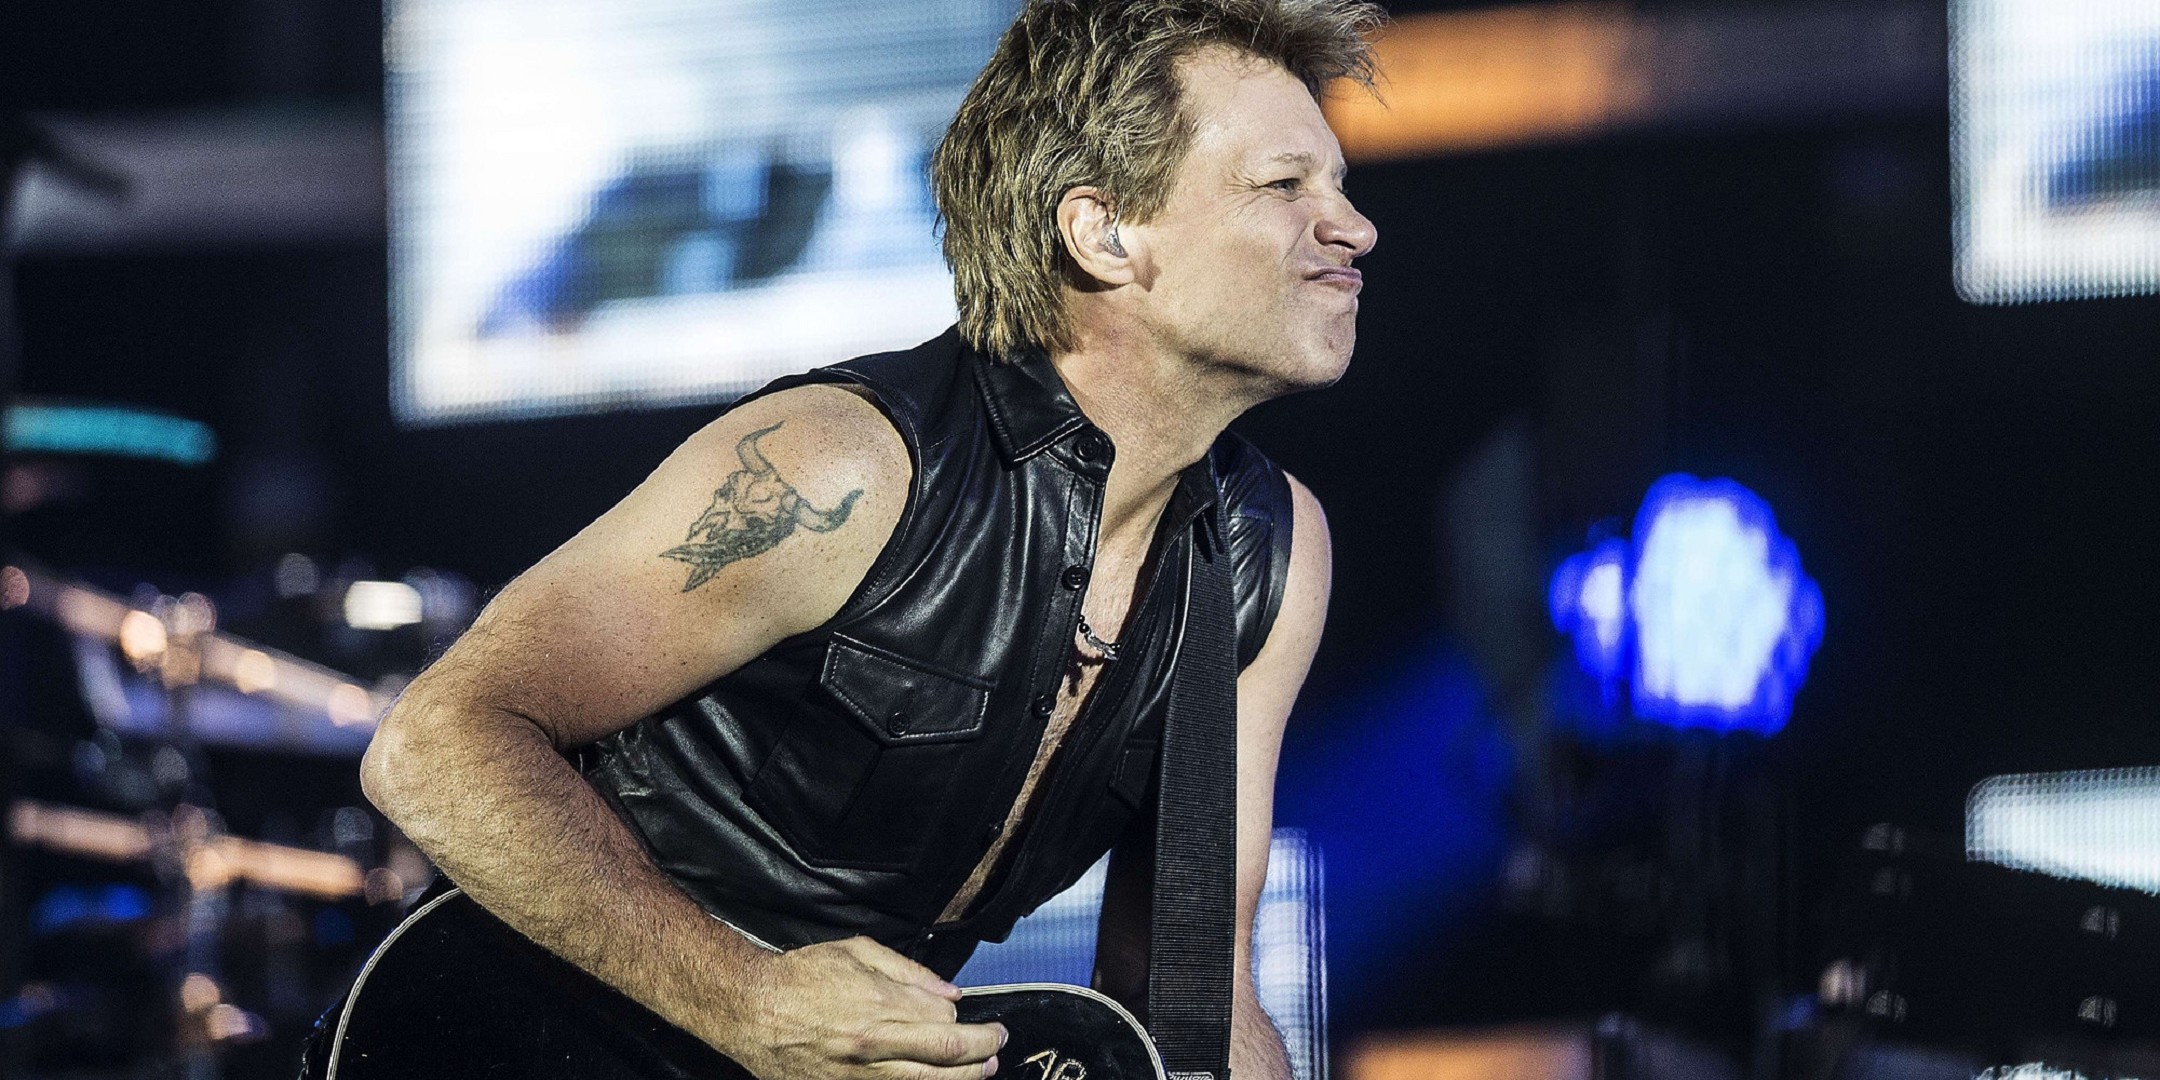 Bon Jovi Live Concert - Jon Bon Jovi , HD Wallpaper & Backgrounds